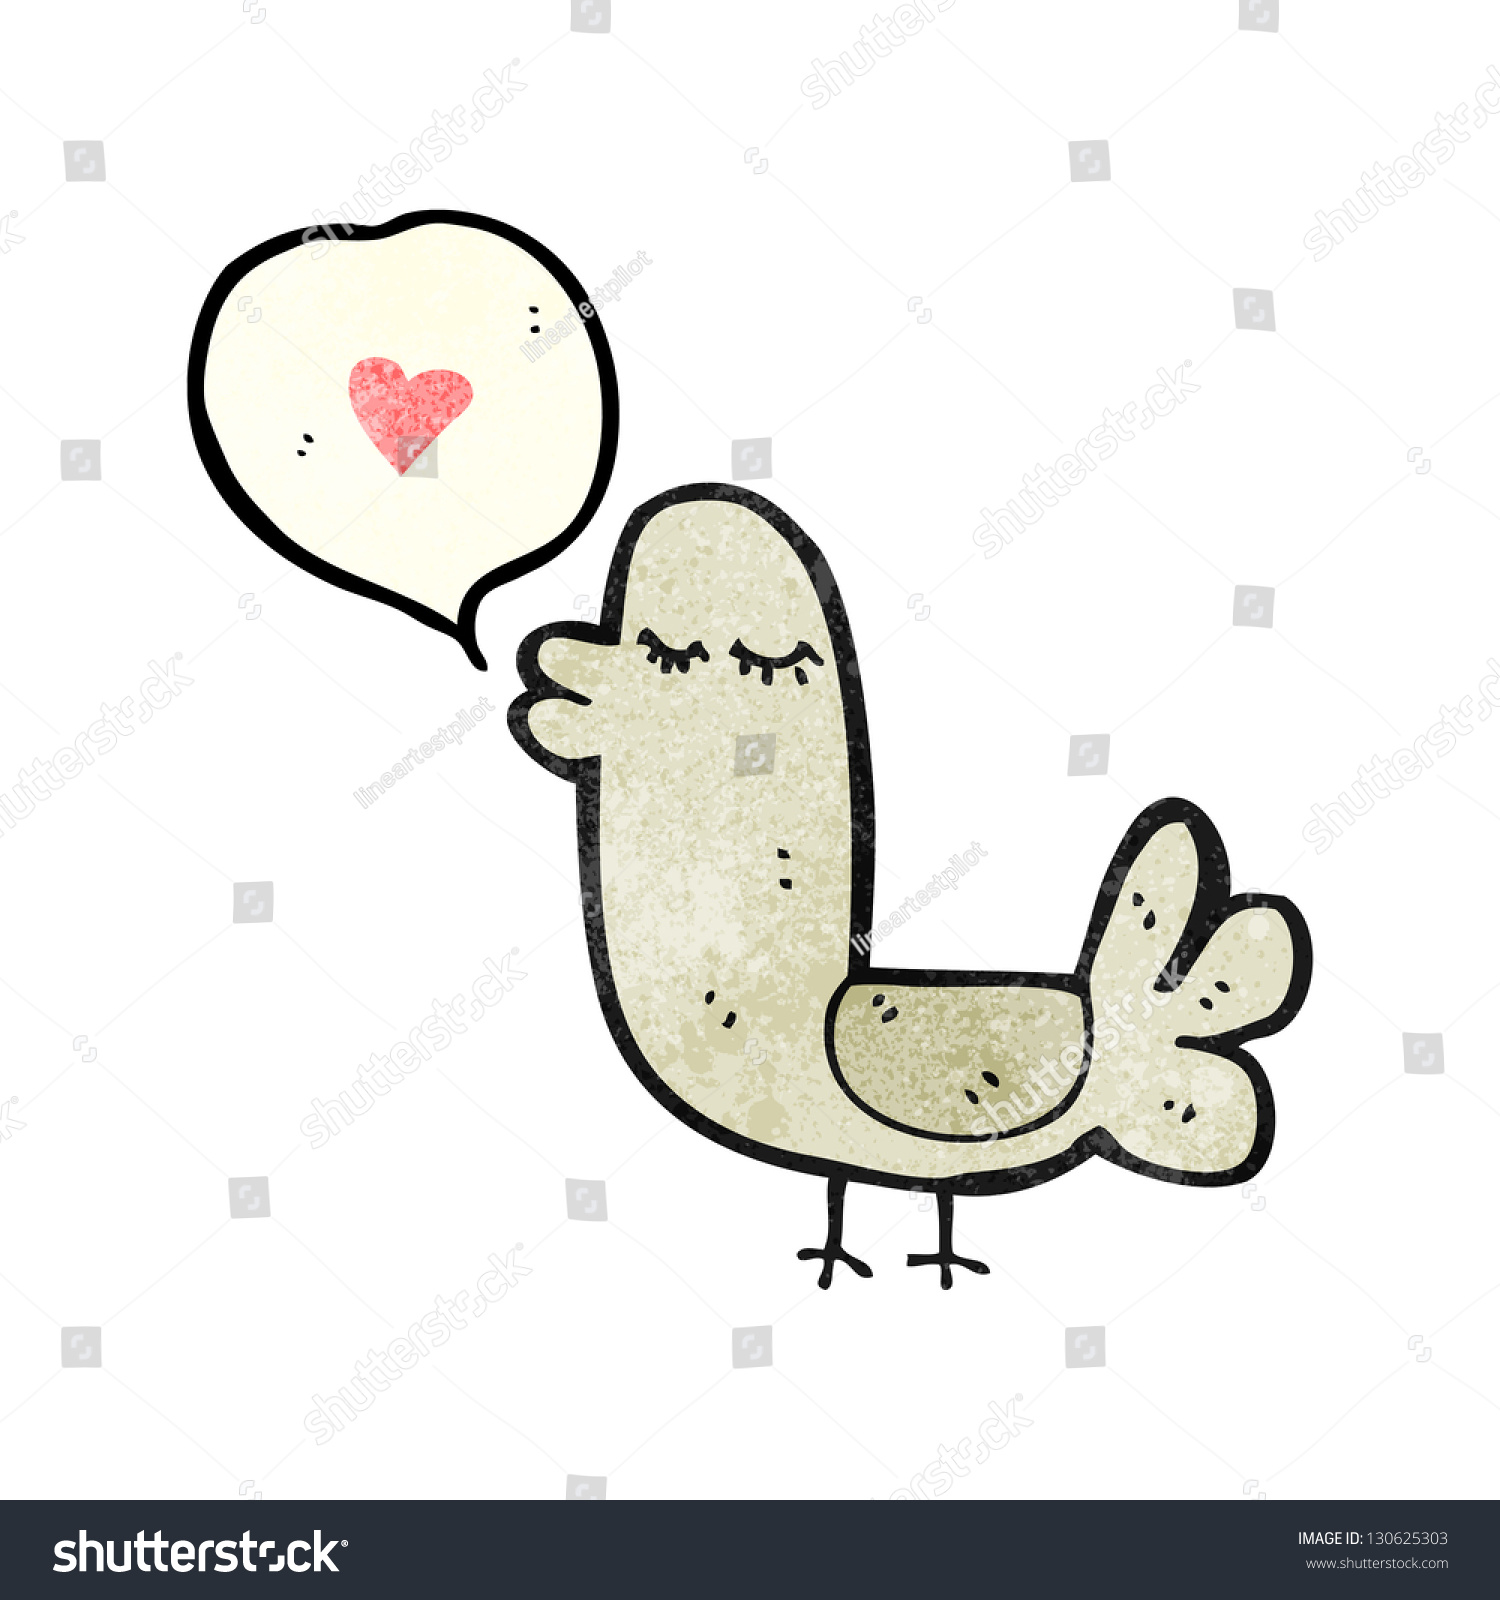 Funny Cartoon Bird Stock Illustration 130625303 | Shutterstock